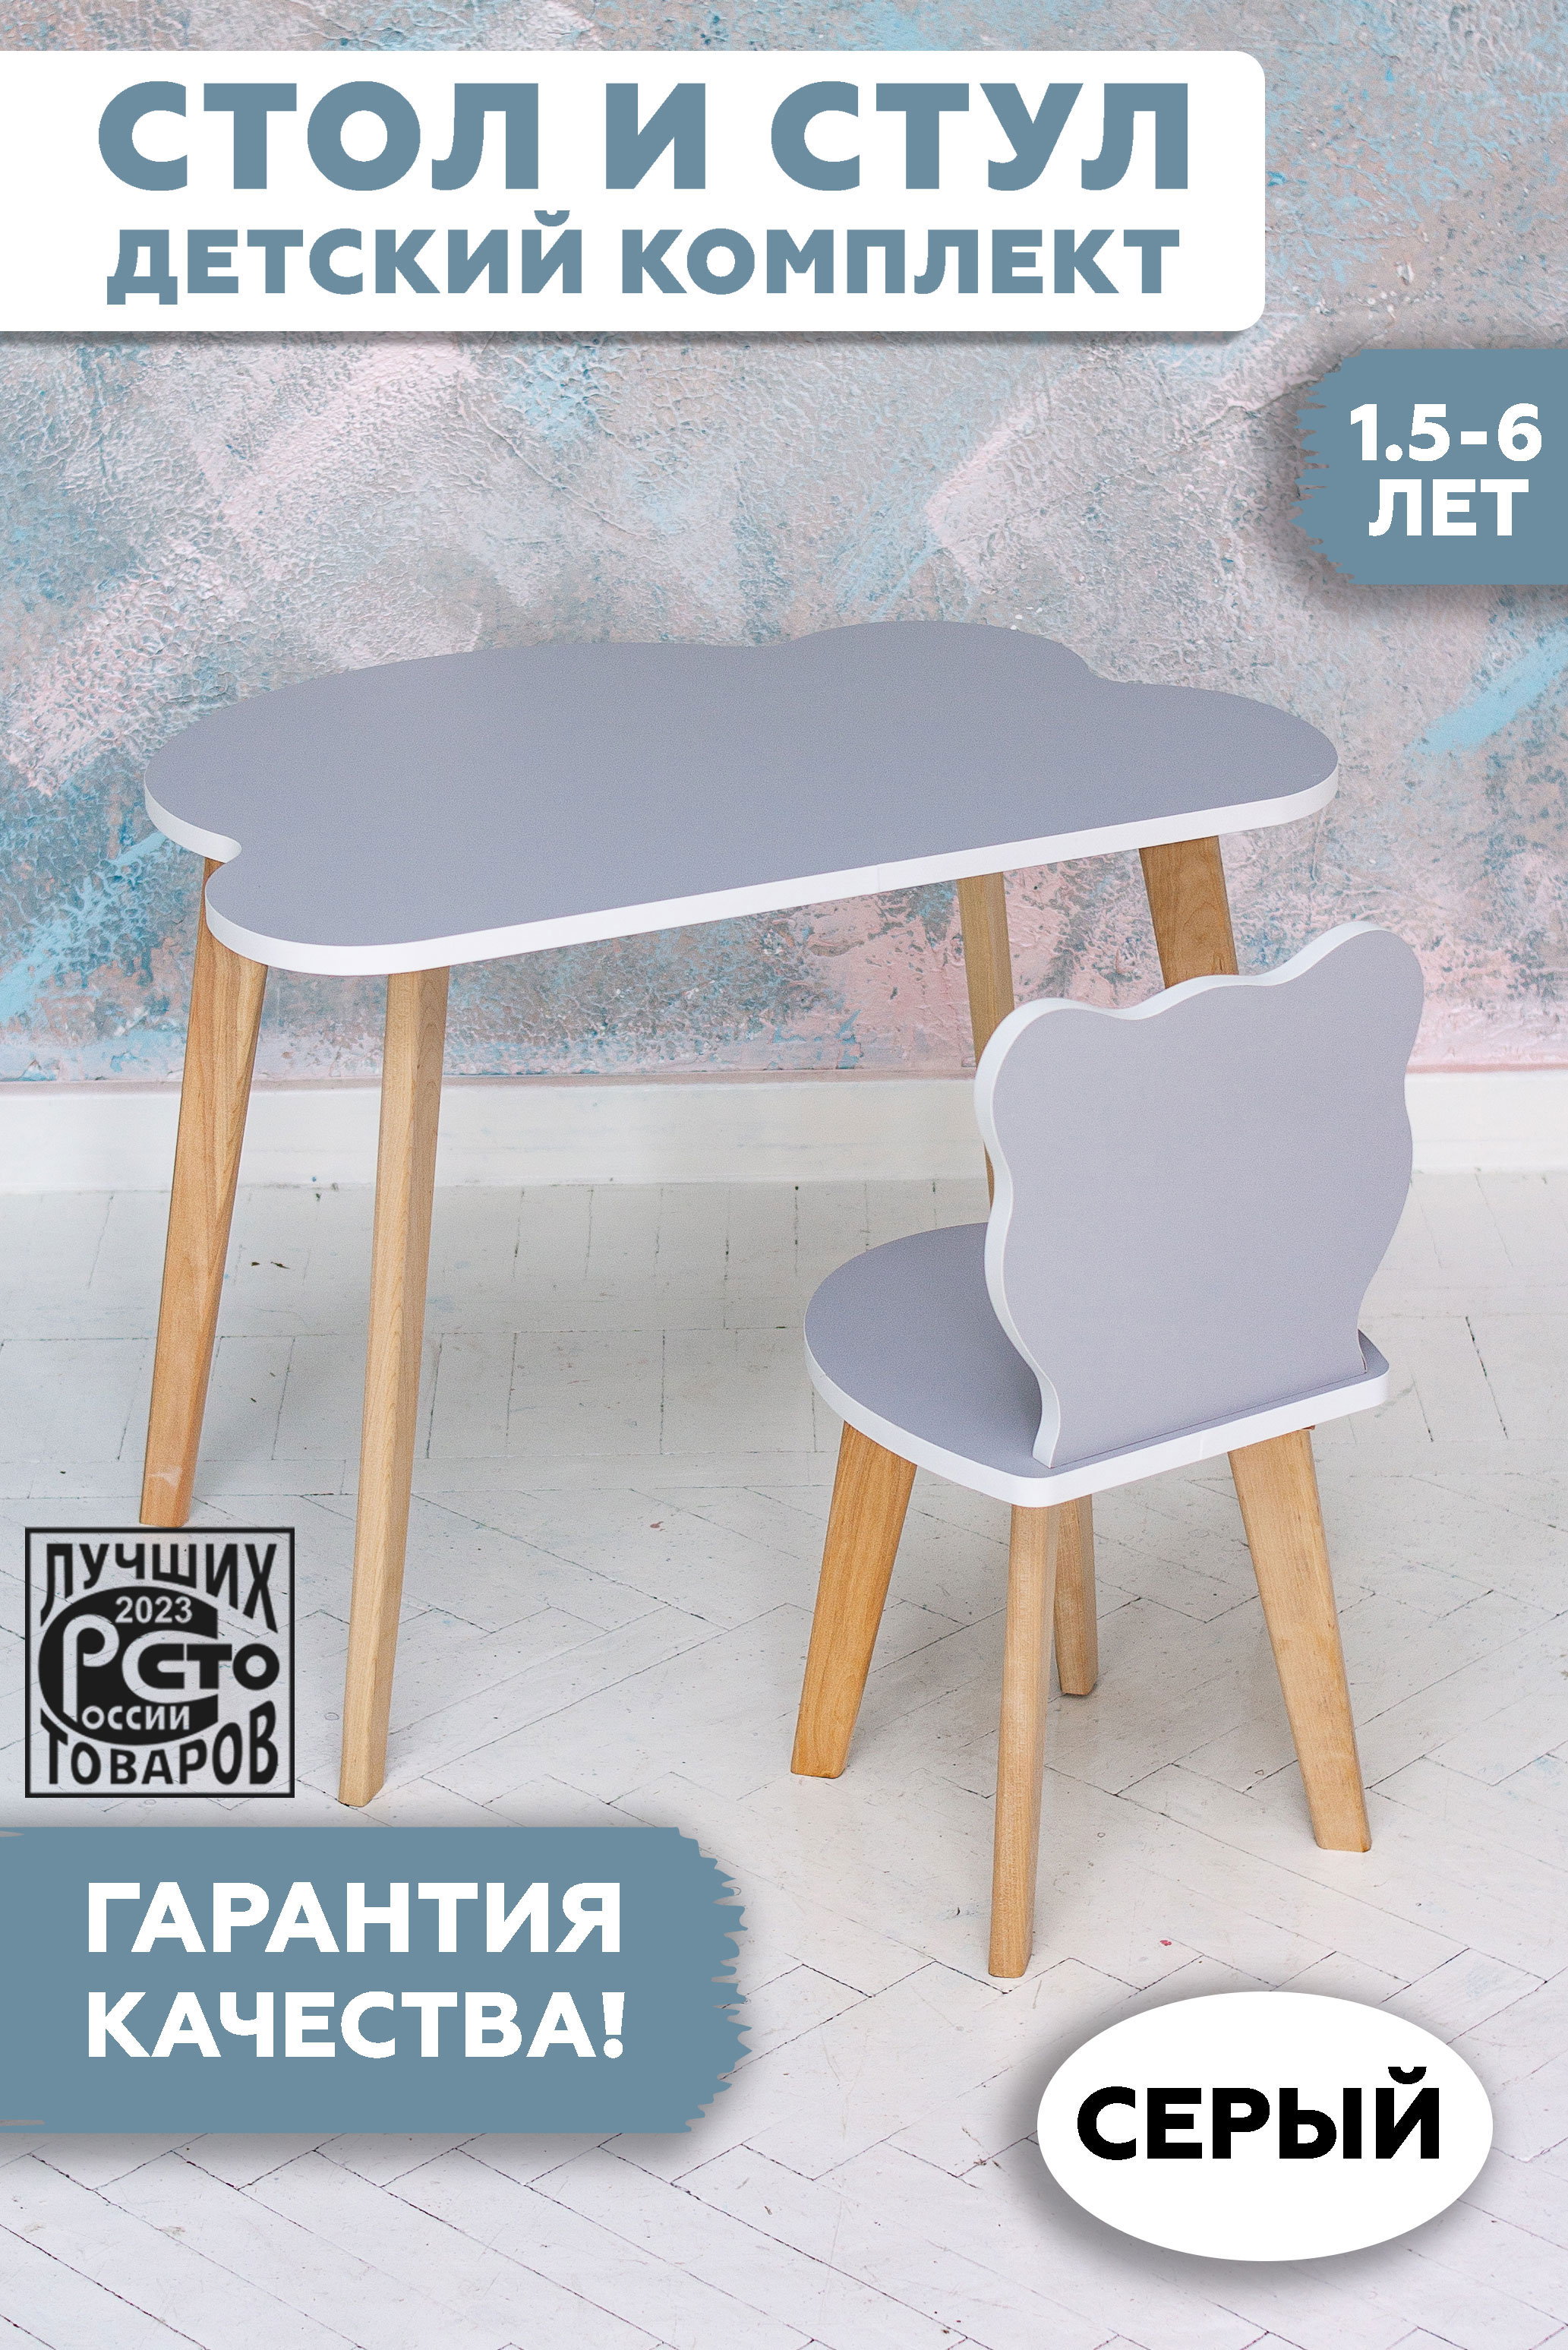 Комплект детской мебели RuLes стул мишка и стол облако детский, серый 12622 ночник детский lats облако голубое